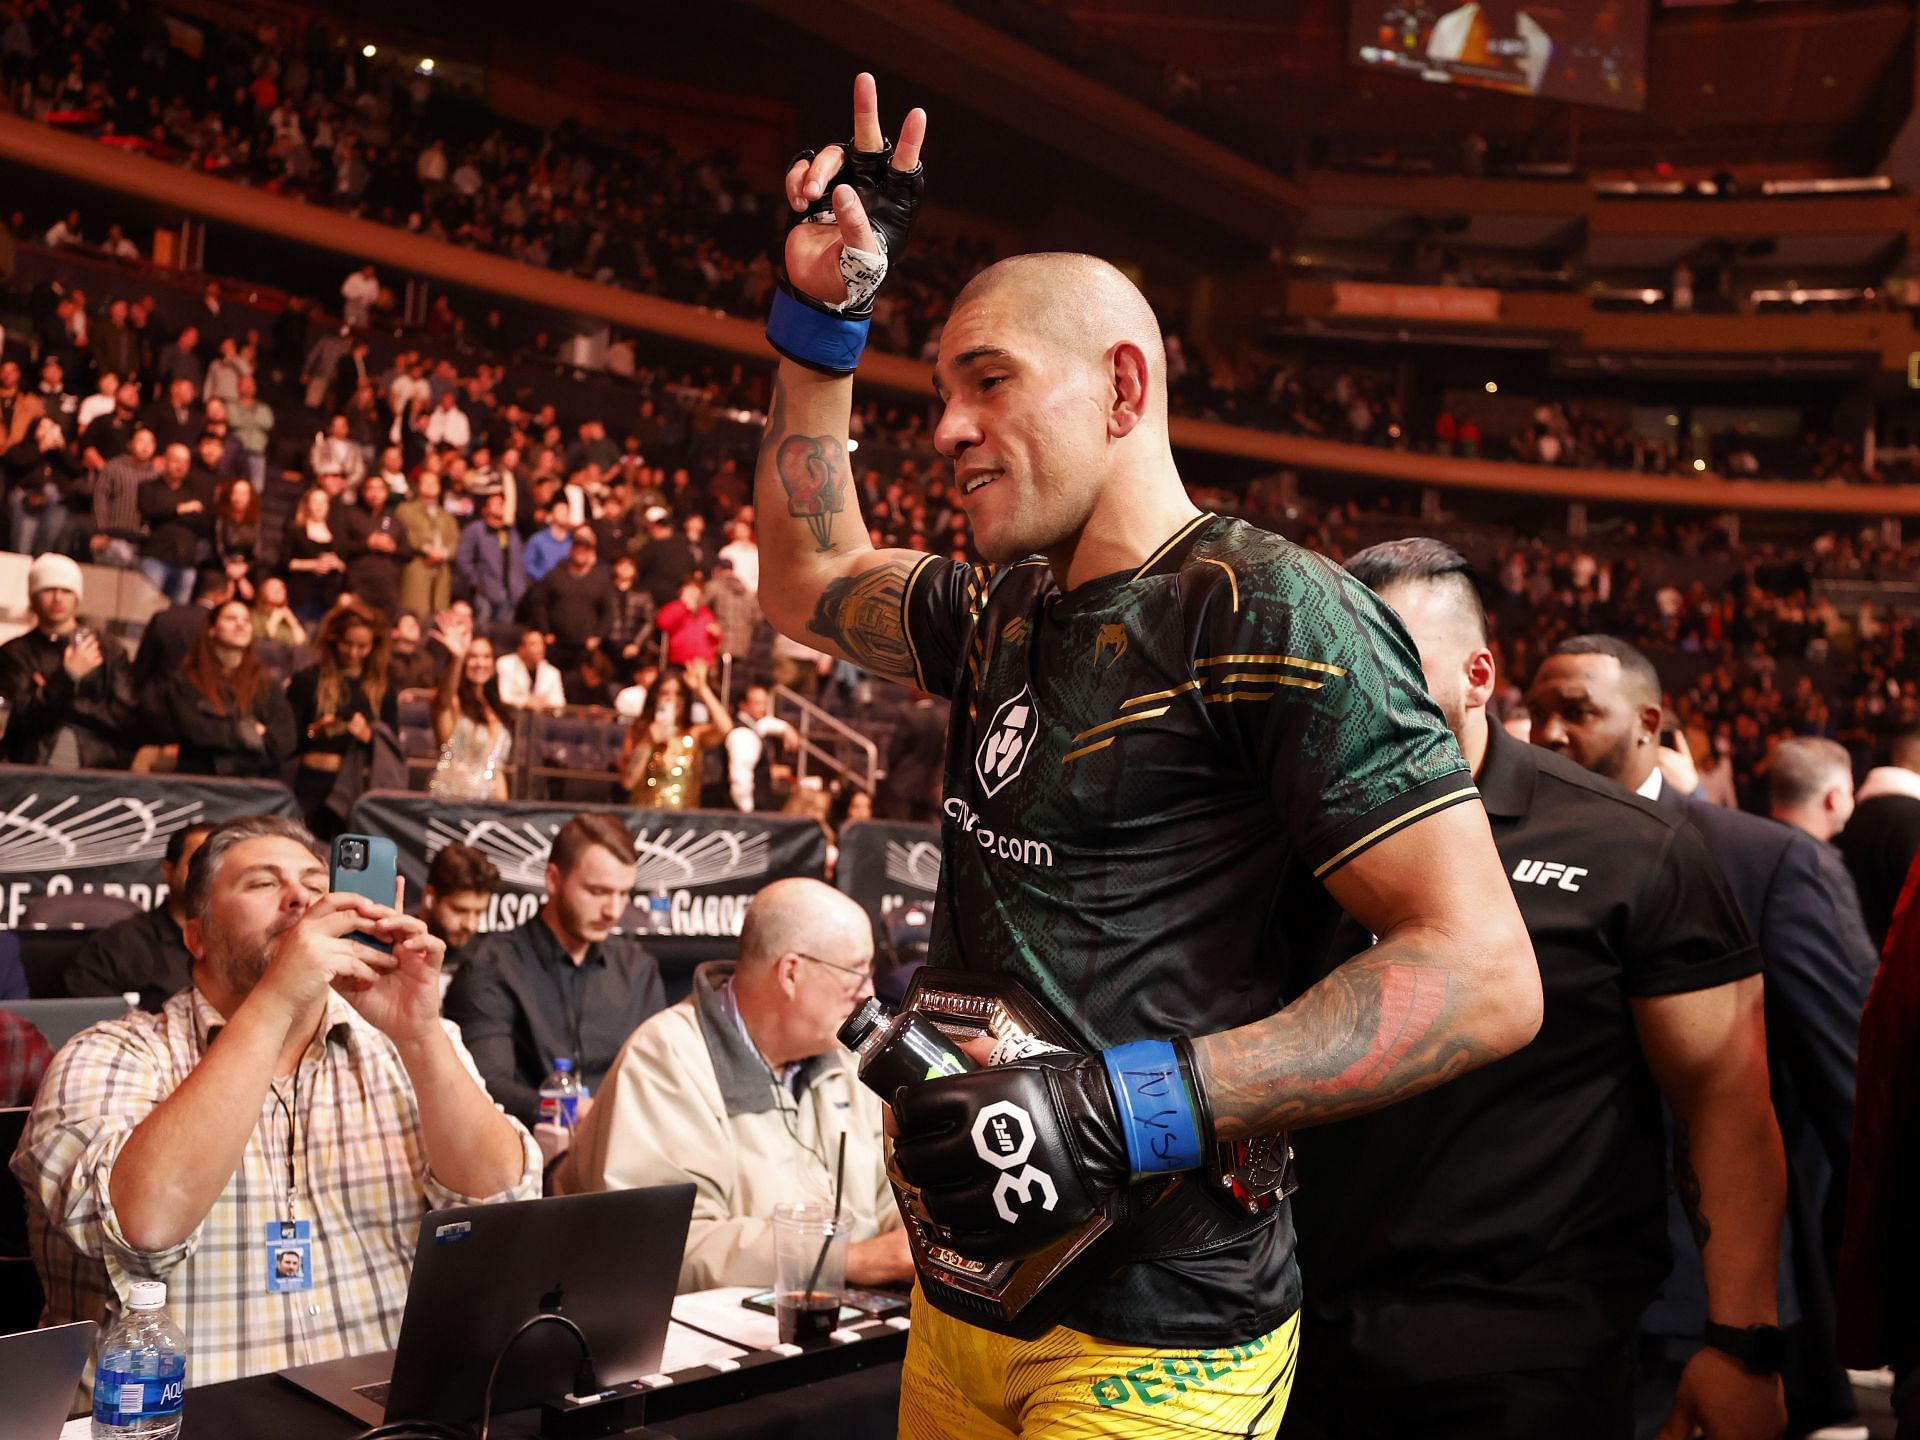 UFC 295: Prochazka v Pereira